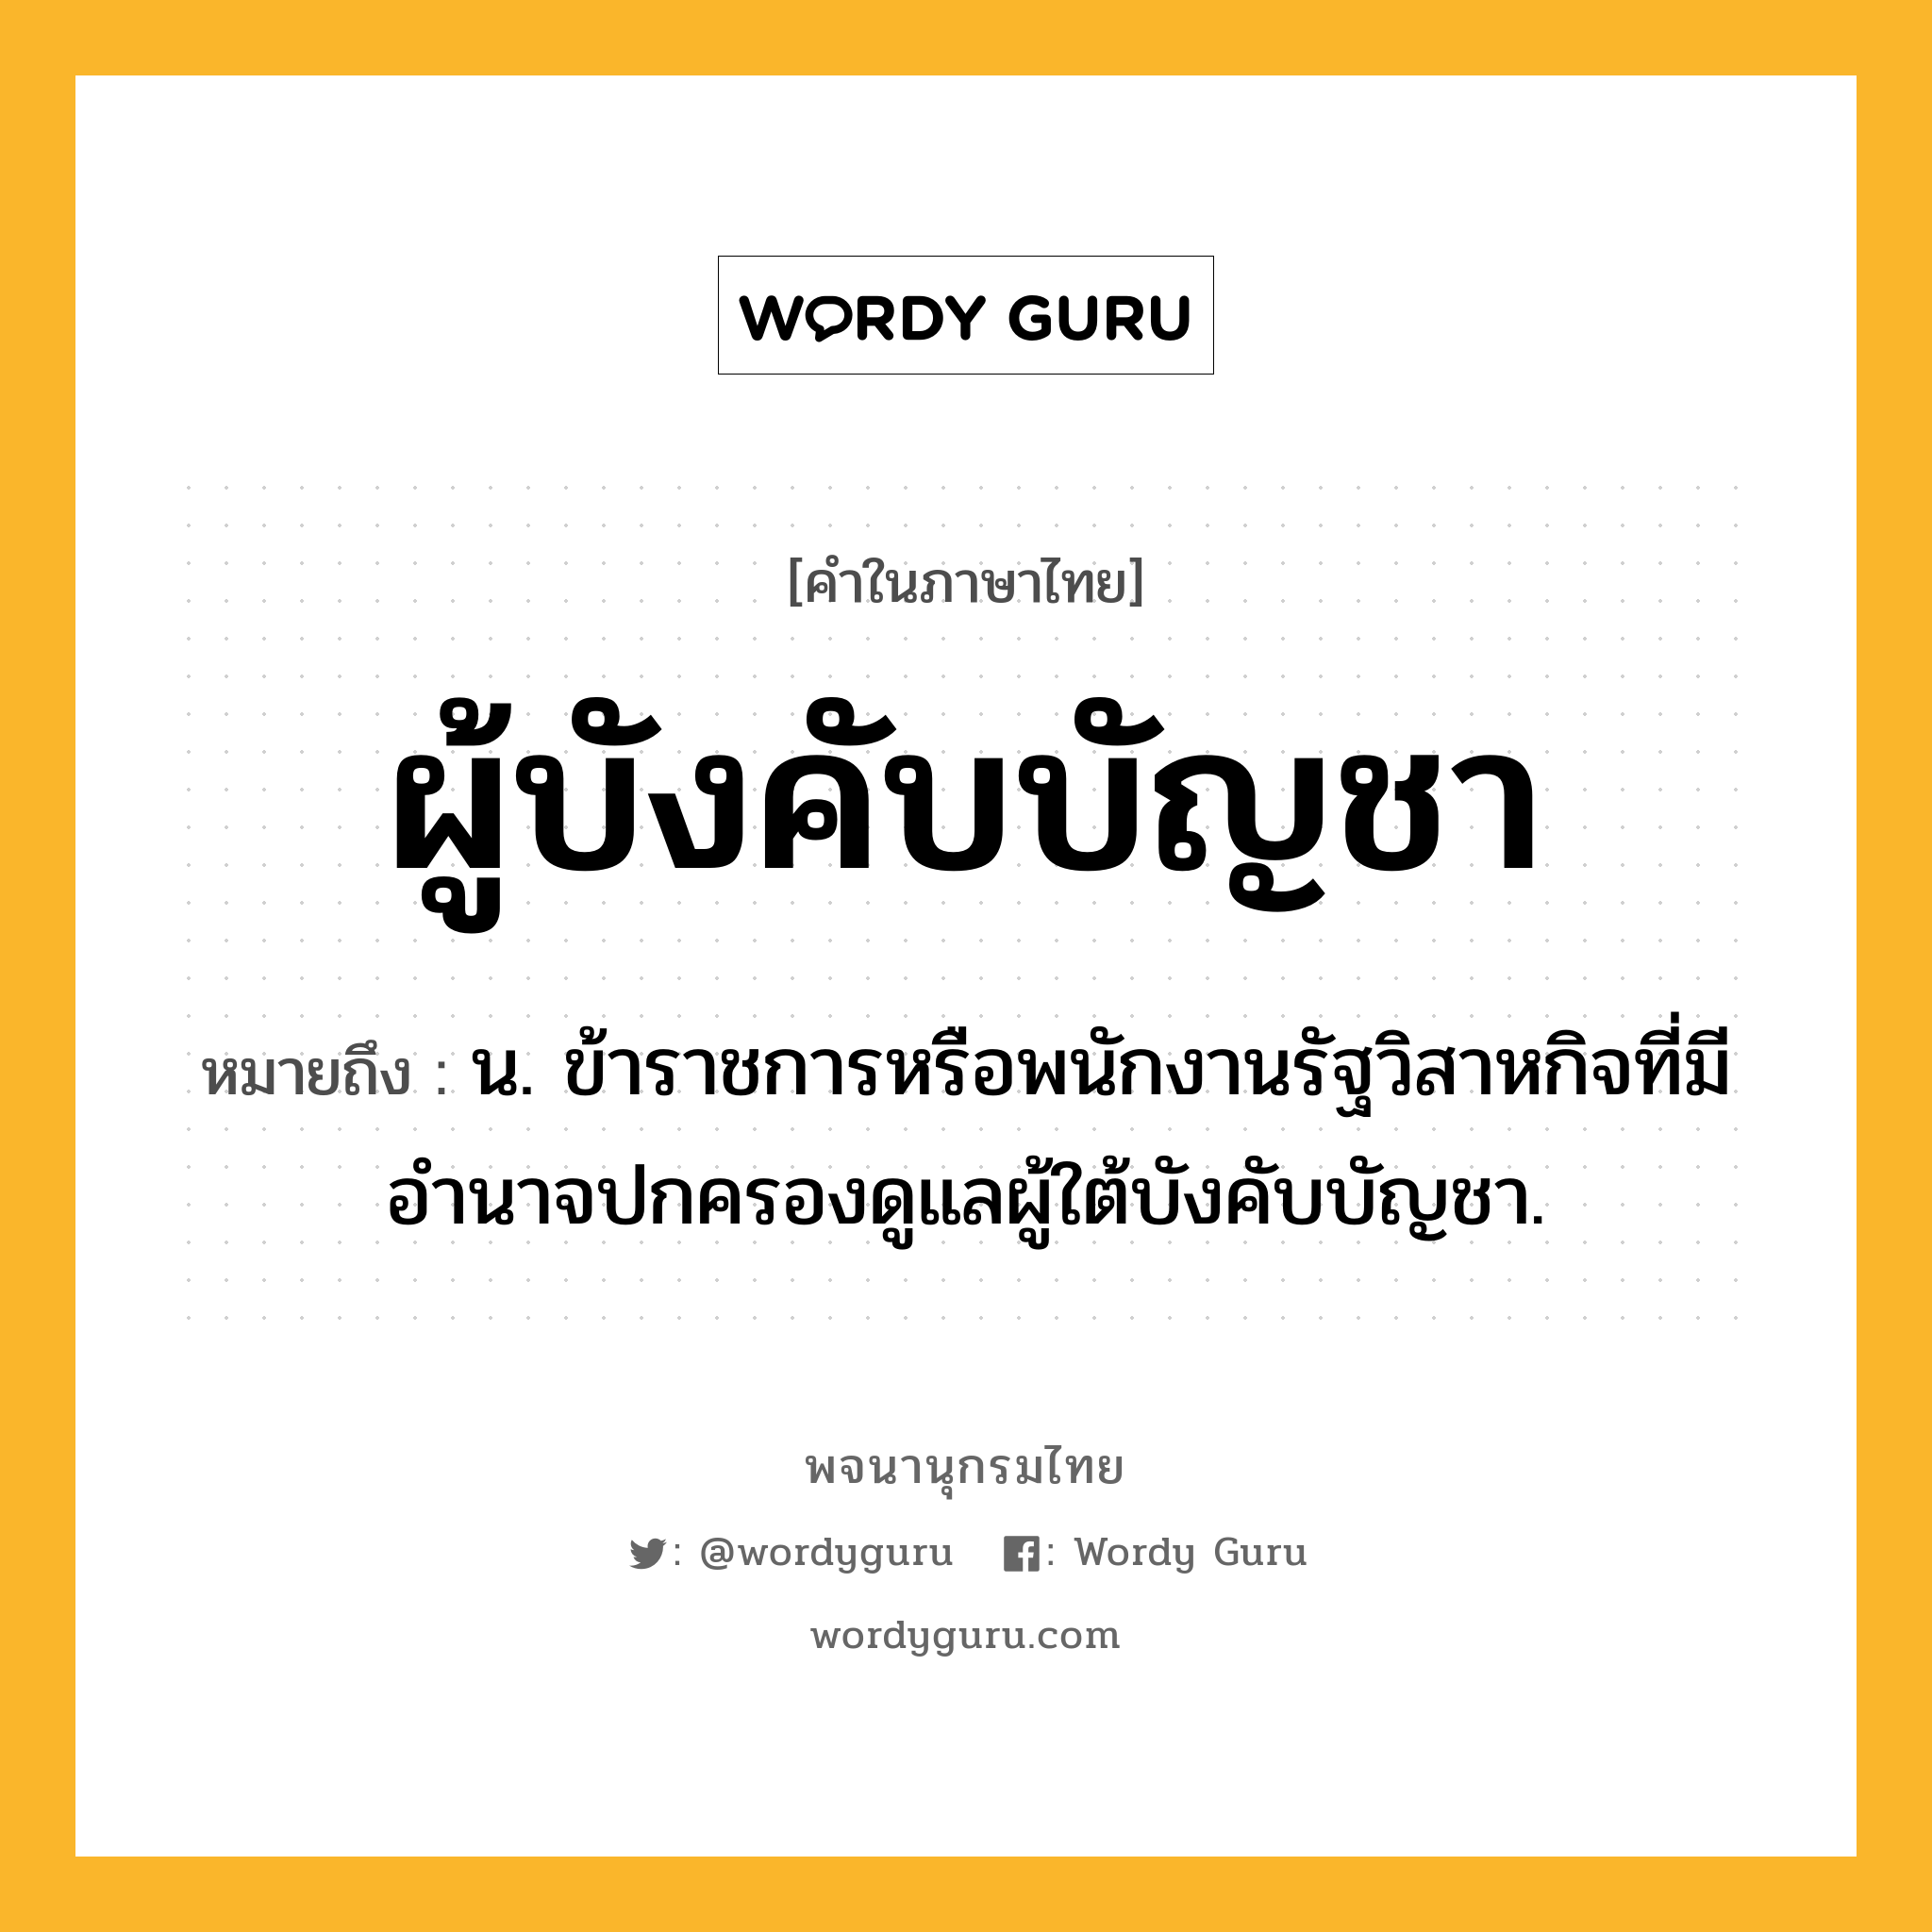 ผู้บังคับบัญชา ความหมาย หมายถึงอะไร?, คำในภาษาไทย ผู้บังคับบัญชา หมายถึง น. ข้าราชการหรือพนักงานรัฐวิสาหกิจที่มีอำนาจปกครองดูแลผู้ใต้บังคับบัญชา.